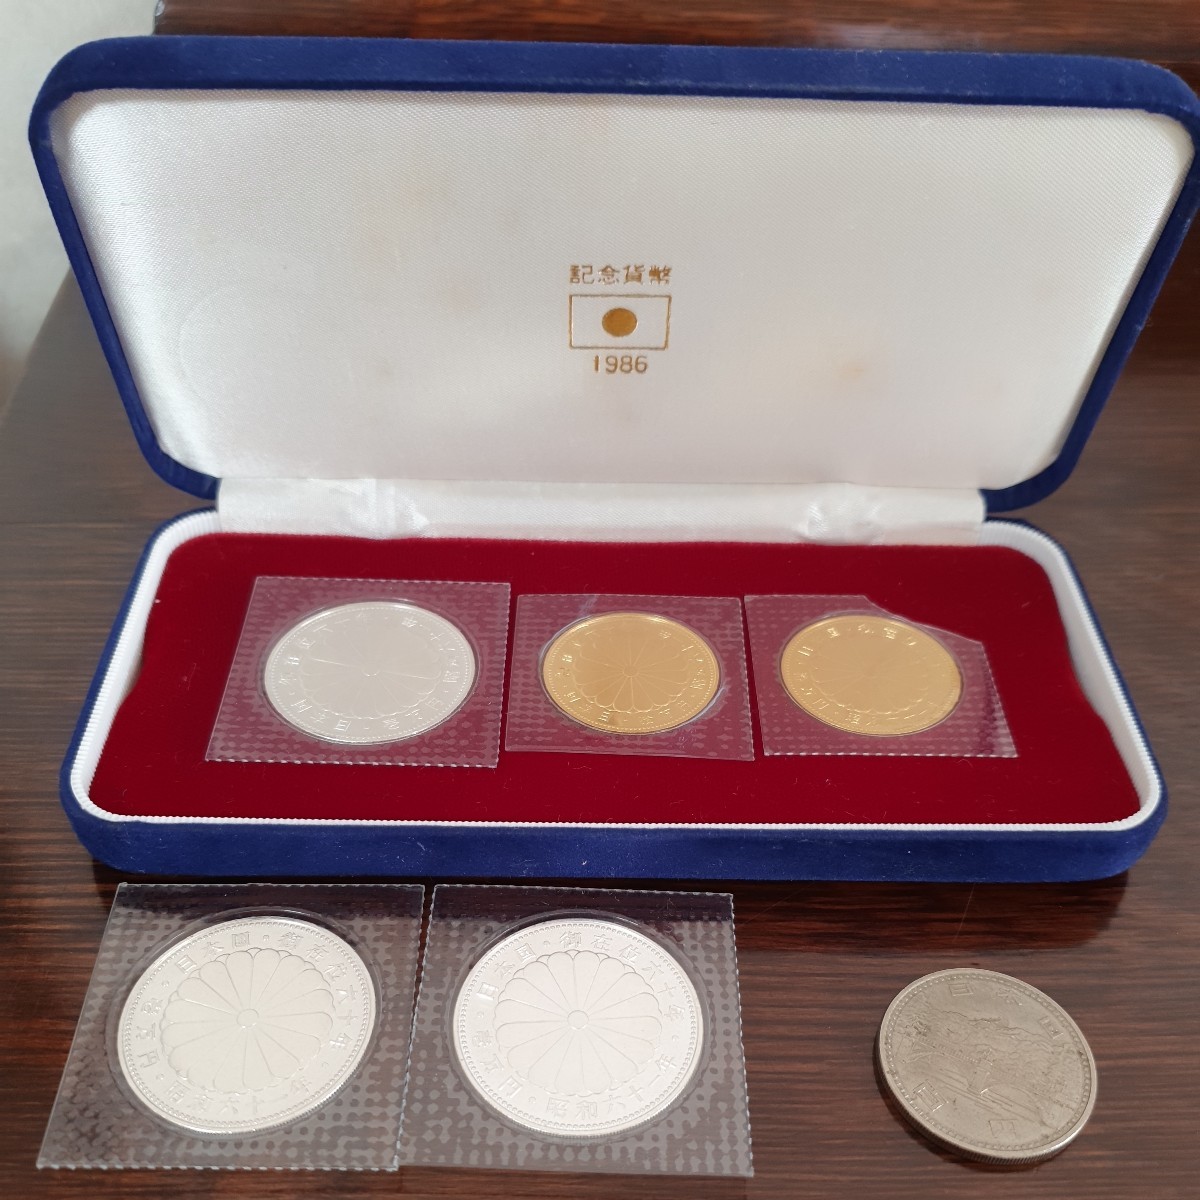 のビニール 天皇陛下在位60年 記念貨幣 昭和61年 1986年 10万円金貨2枚